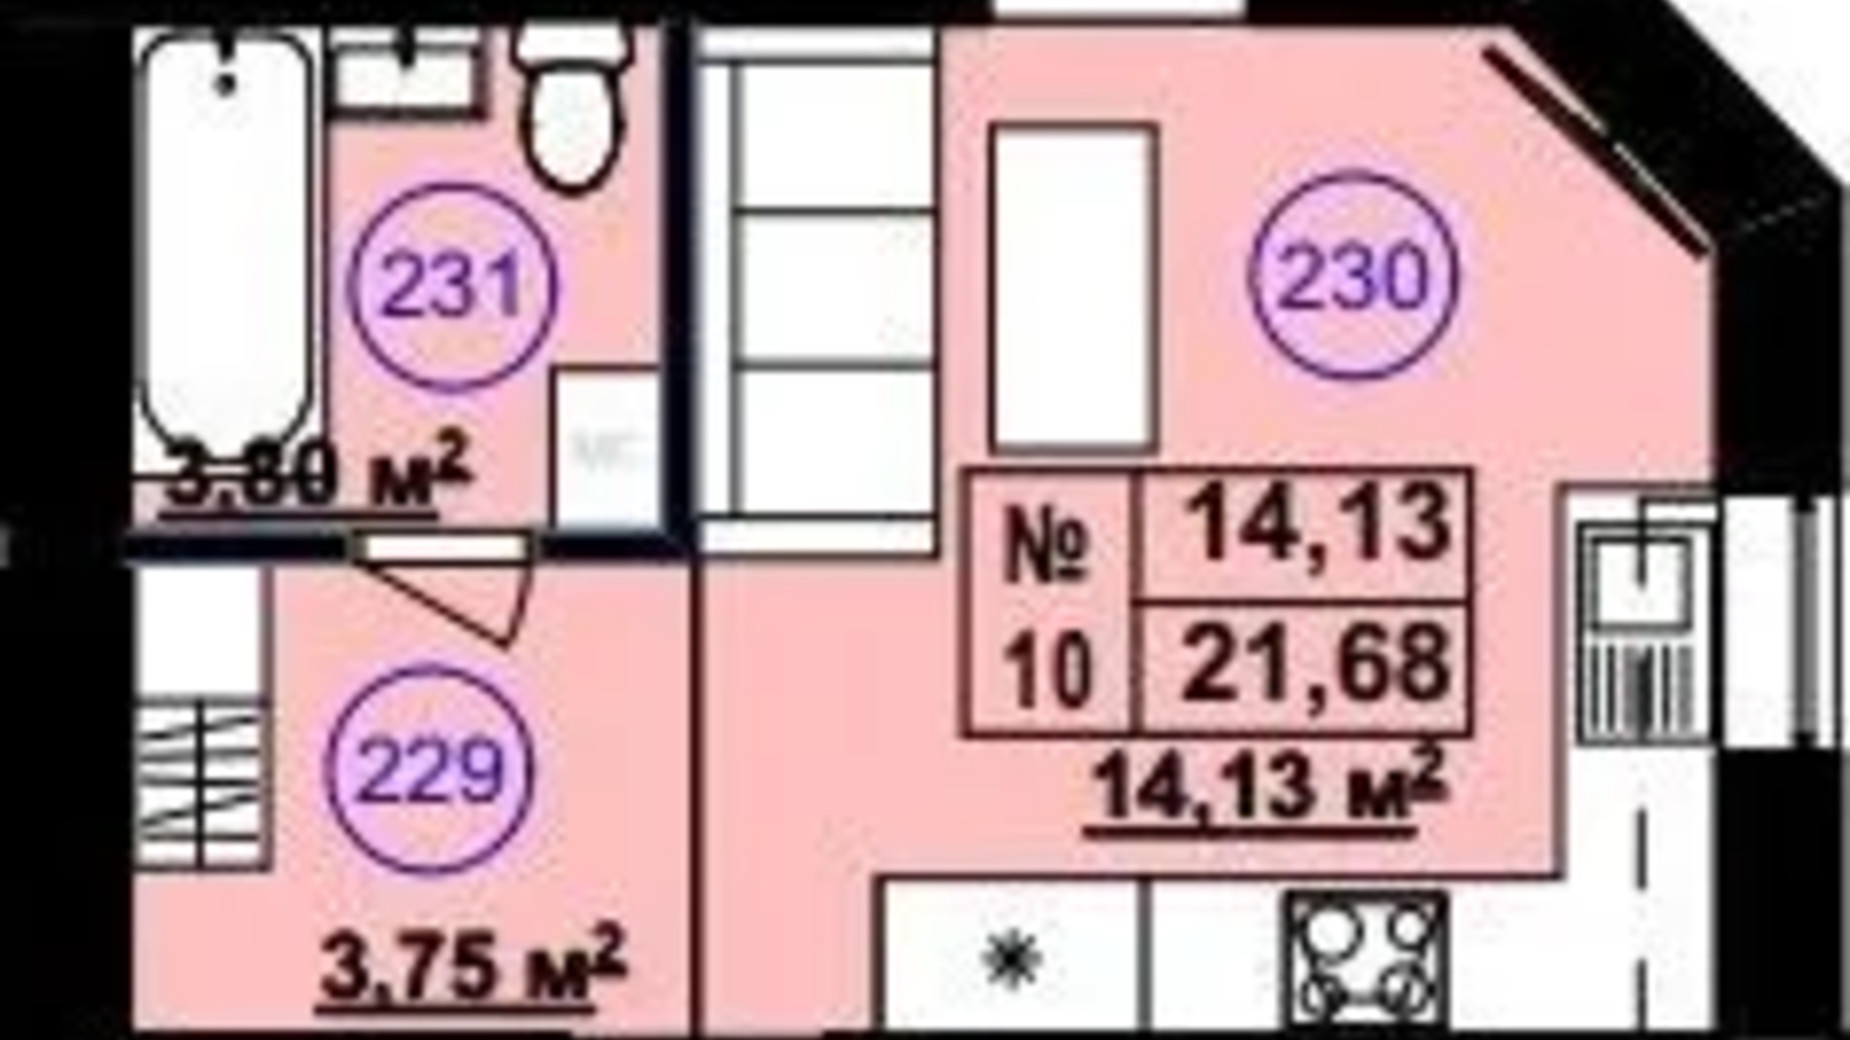 Планування 1-кімнатної квартири в Клубний будинок Софія 2 21.68 м², фото 617248